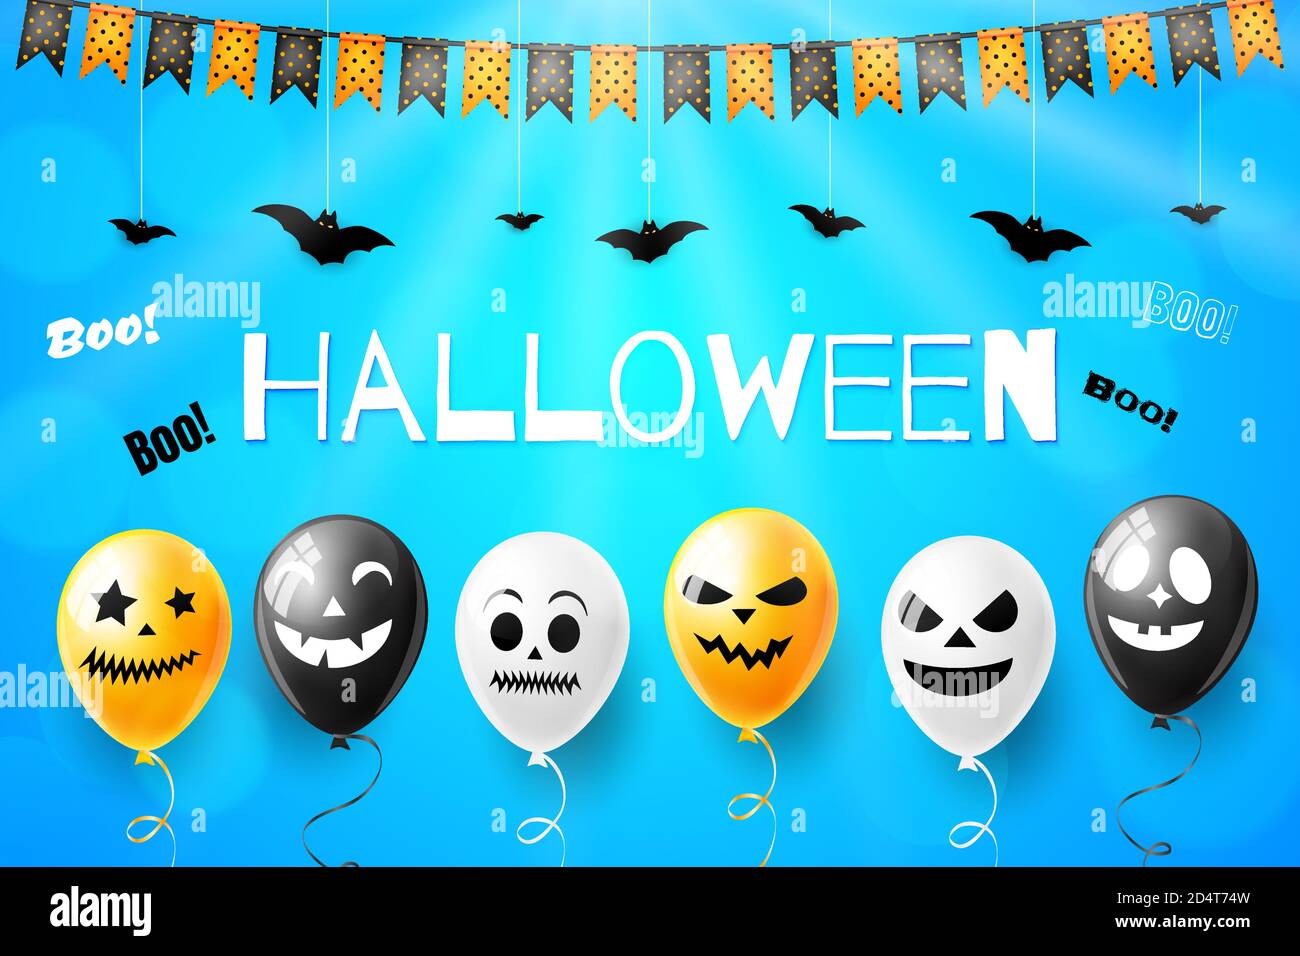 Happy Halloween Vektor Illustration mit gruseligen Luftballons für Banner Oder Poster Stock Vektor